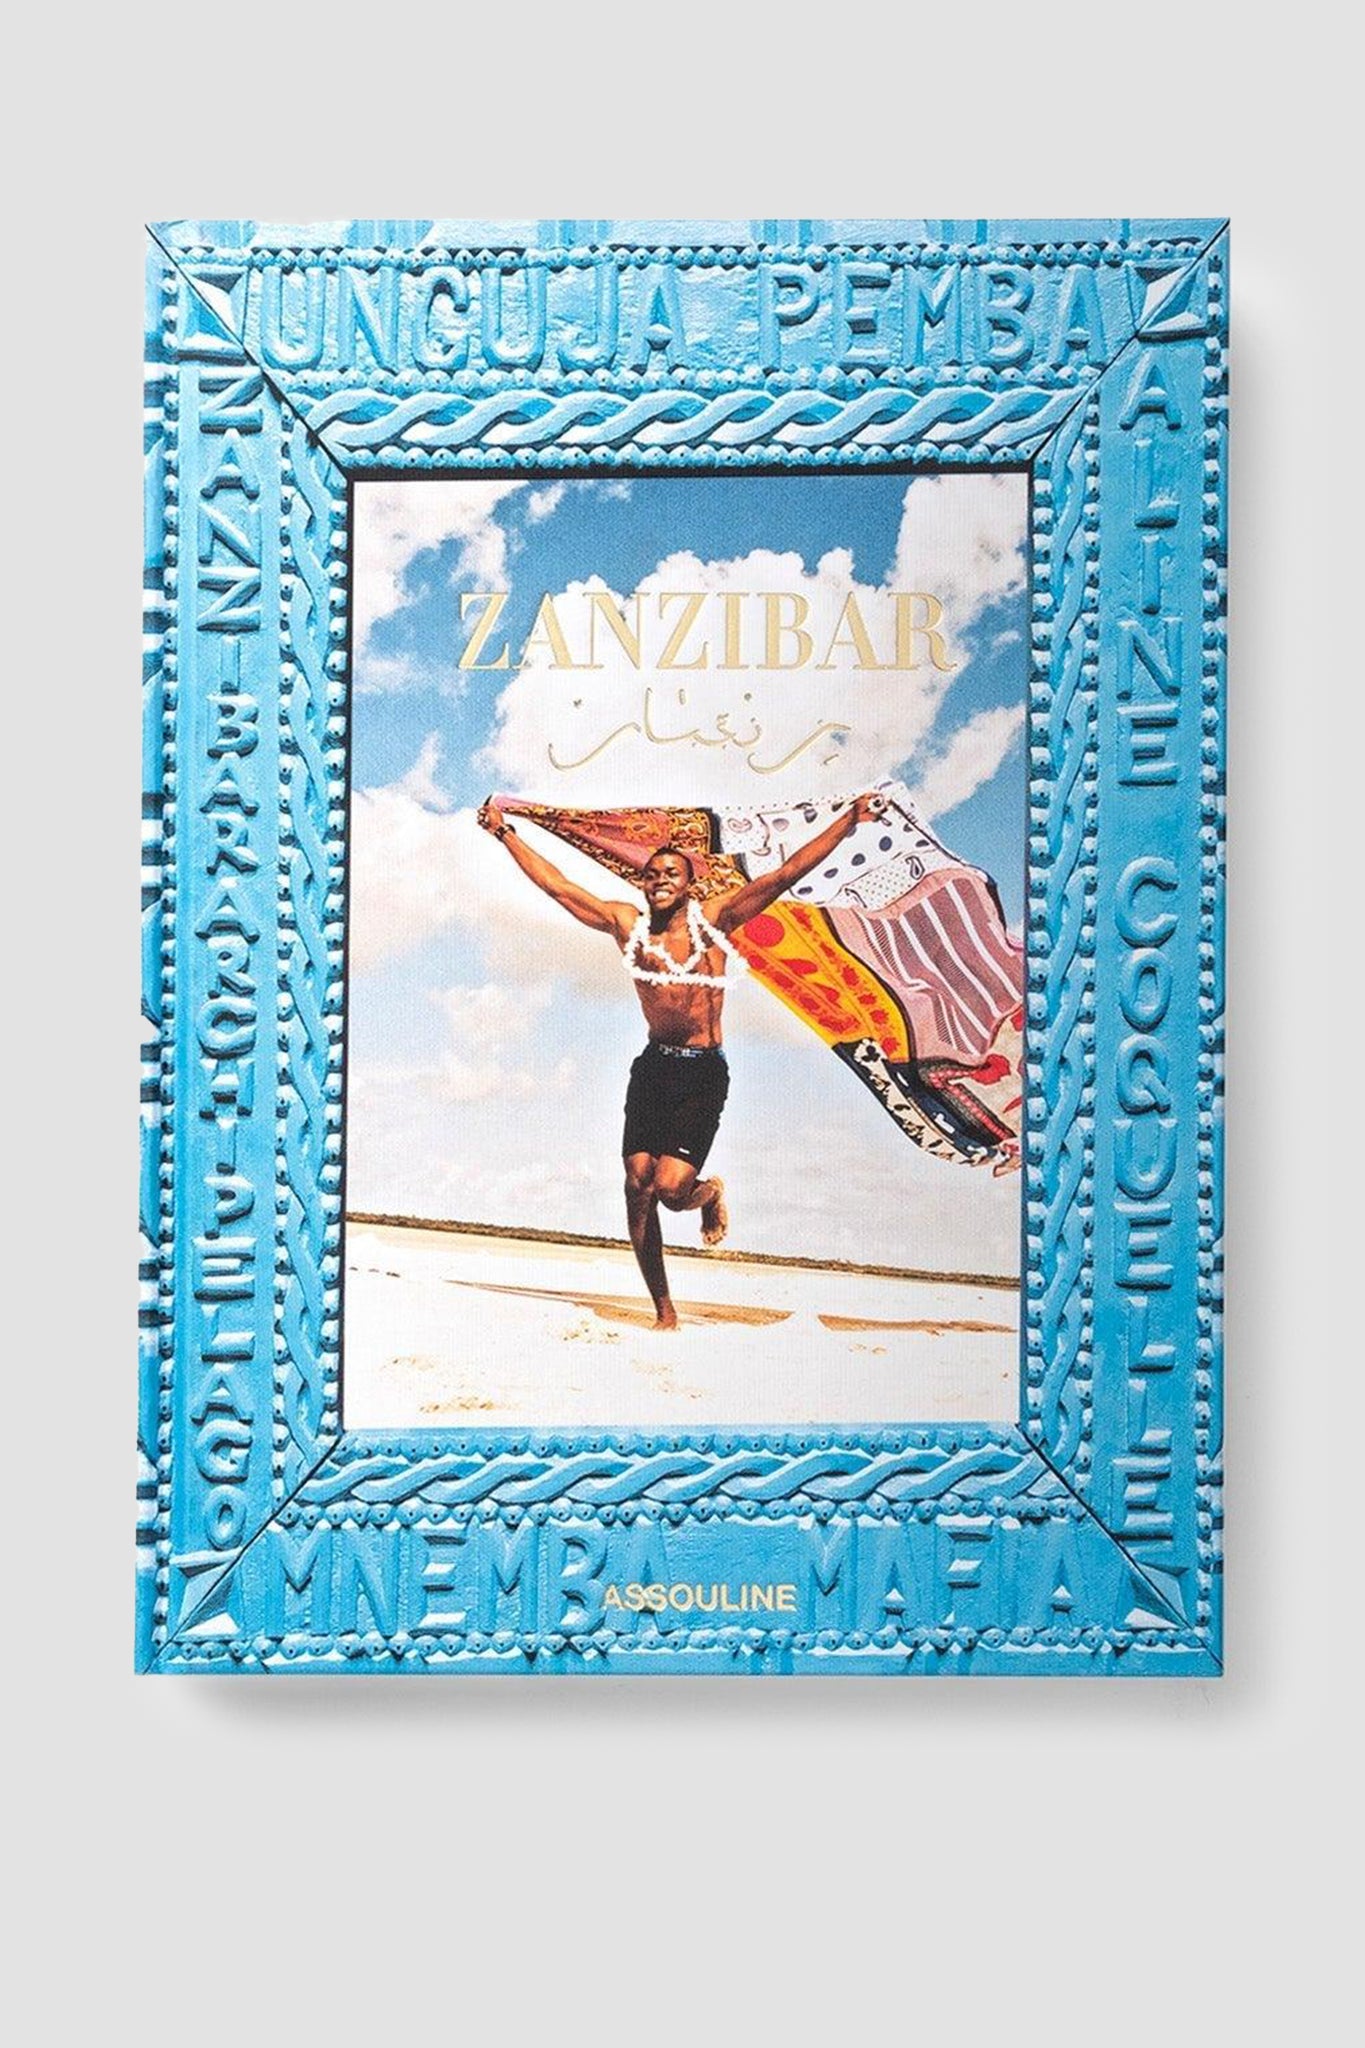 ASSOULINE Zanzibar Hardcover Book by Aline Coquelle